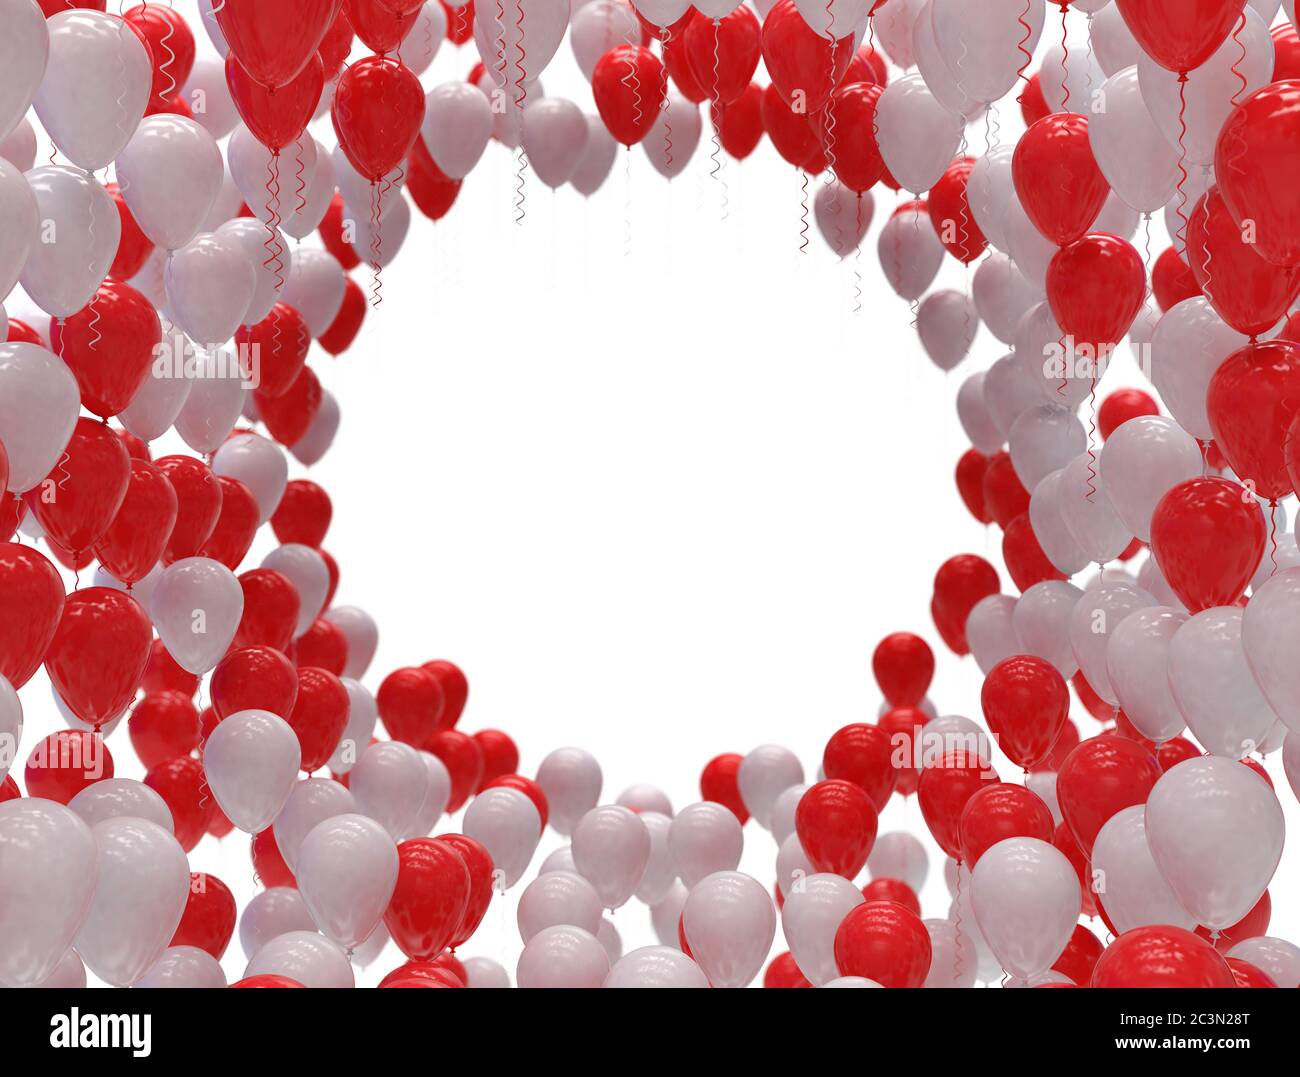 Weiße und rote Ballons. Alles Liebe zum Valentinstag, Hintergrund Celebration 3D-Illustration. Stockfoto